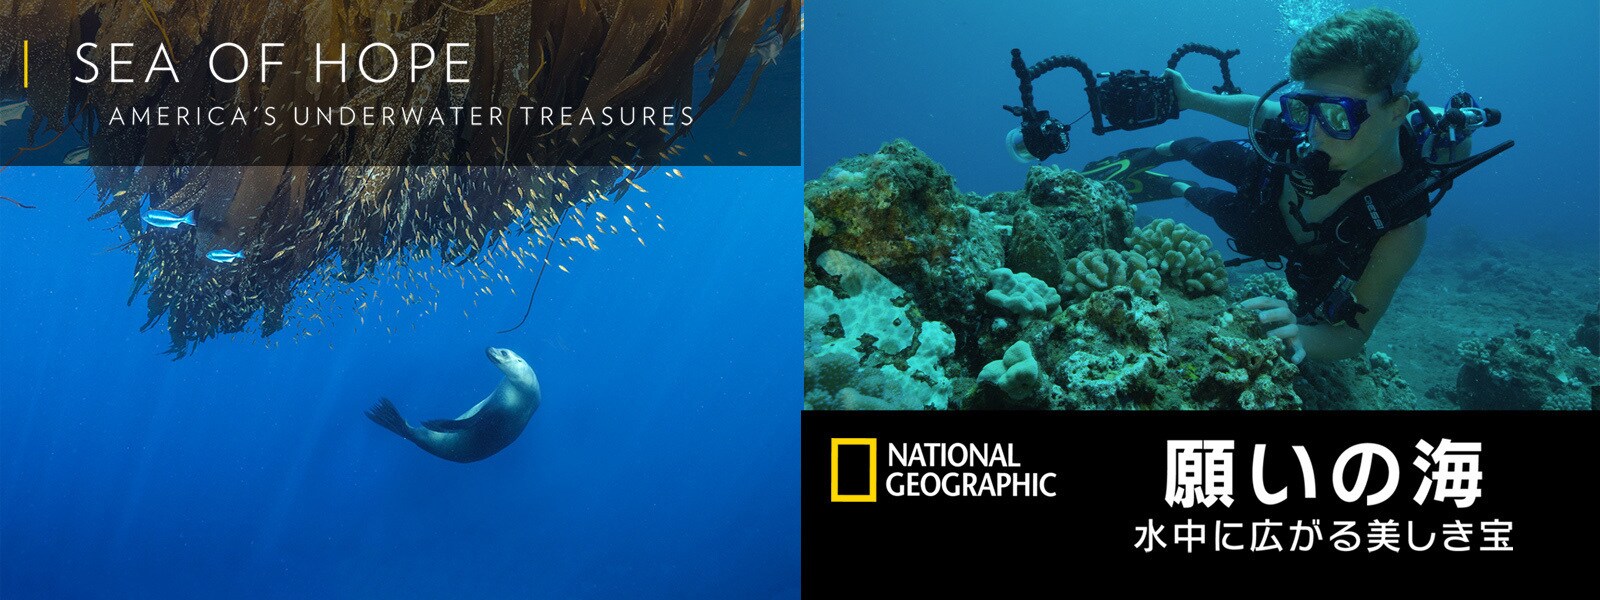 願いの海:水中に広がる美しき宝｜Sea of Hope: America's Underwater Treasures Hero Object 